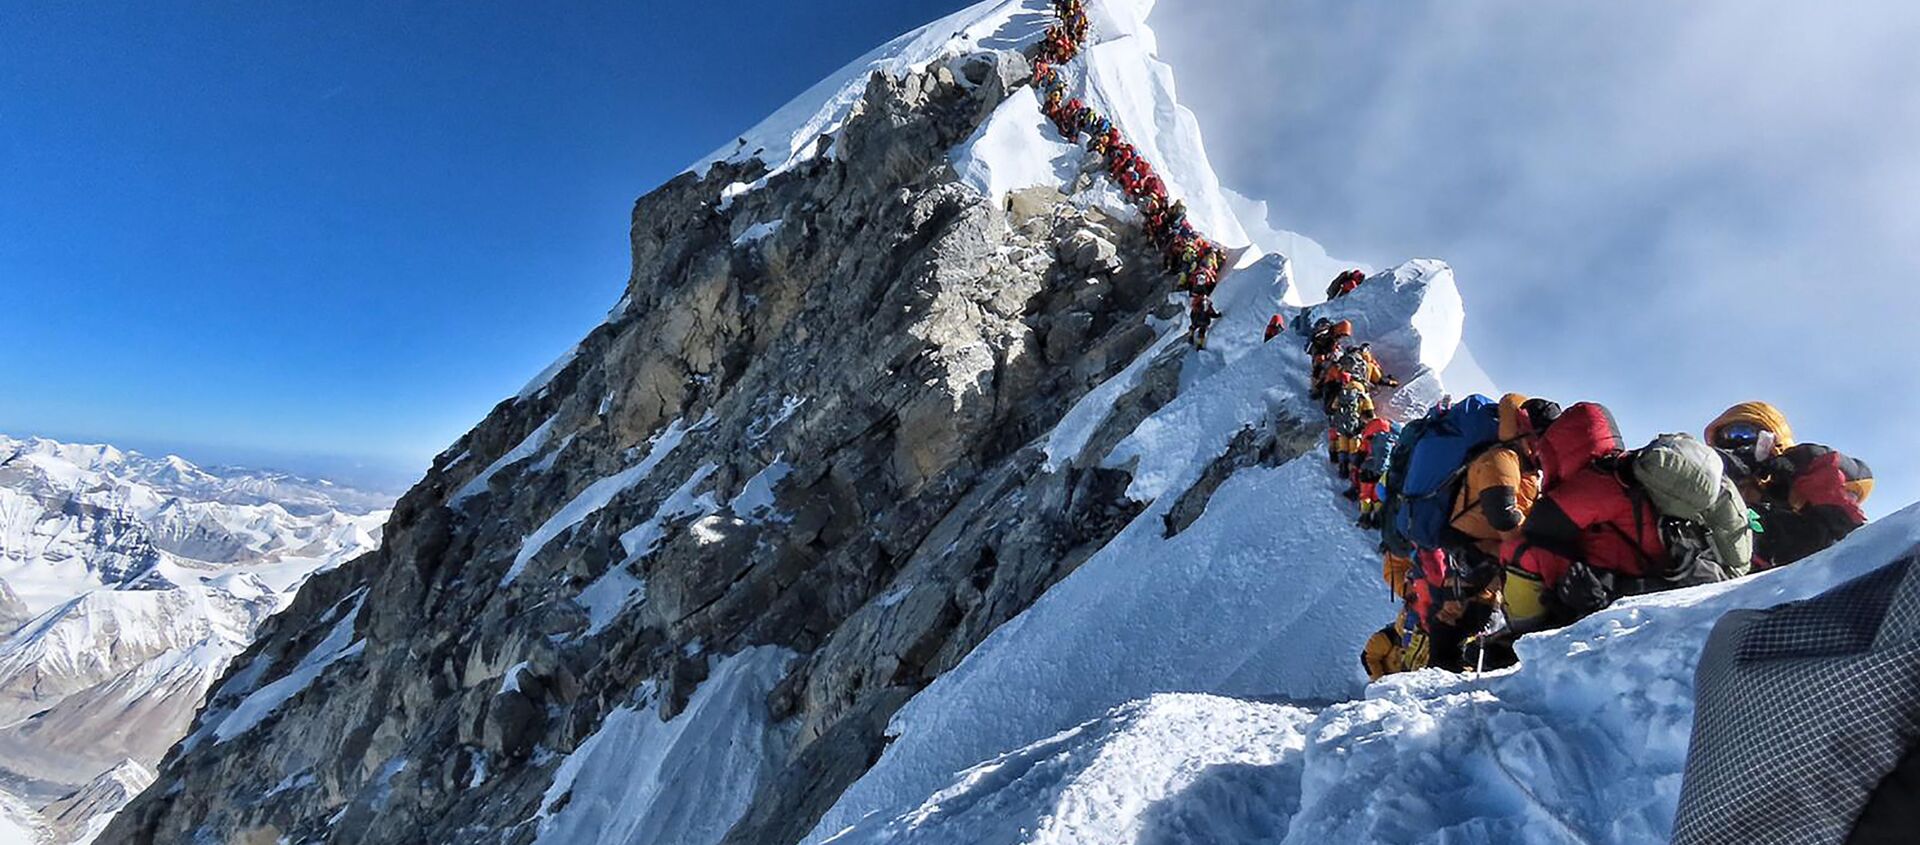 Dòng người tắc nghẽn khi leo lên núi Everest - Sputnik Việt Nam, 1920, 02.06.2019